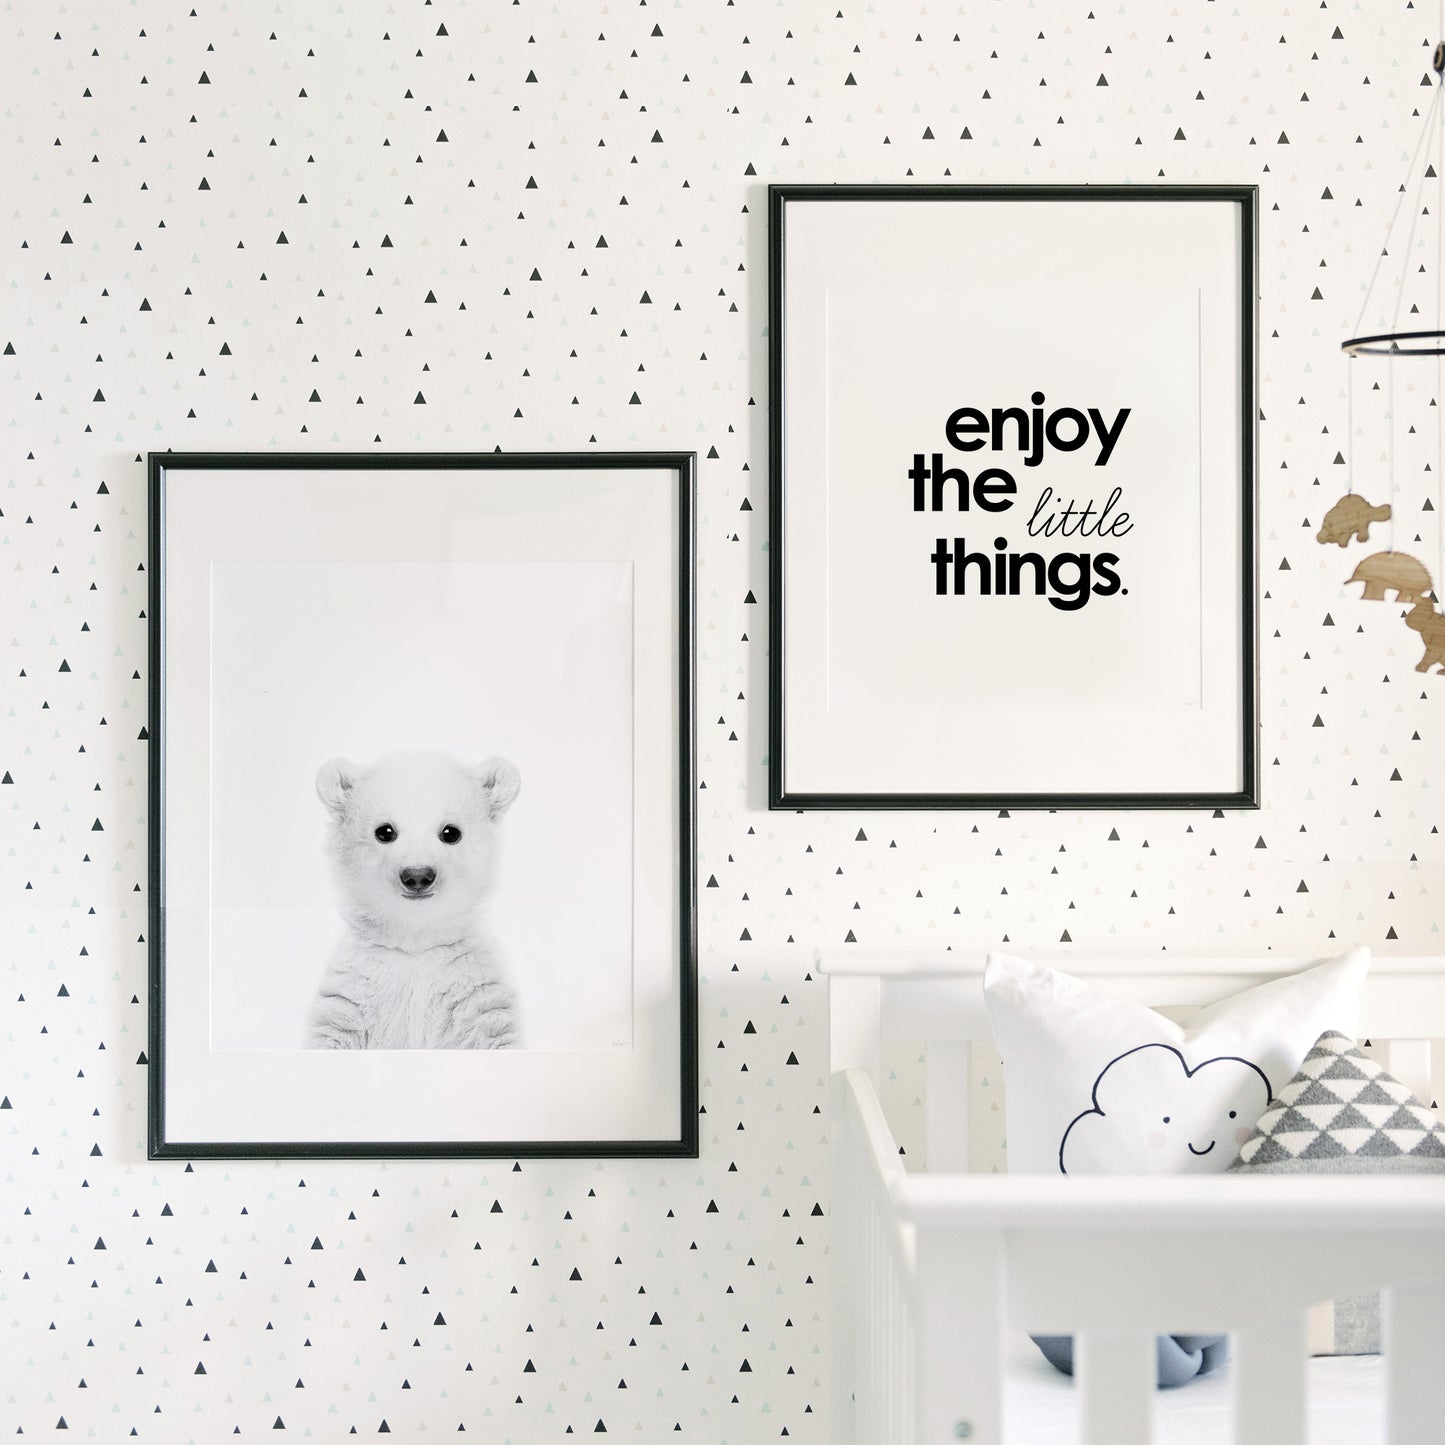 Black and White Polar Bear Wall Art for nursery 